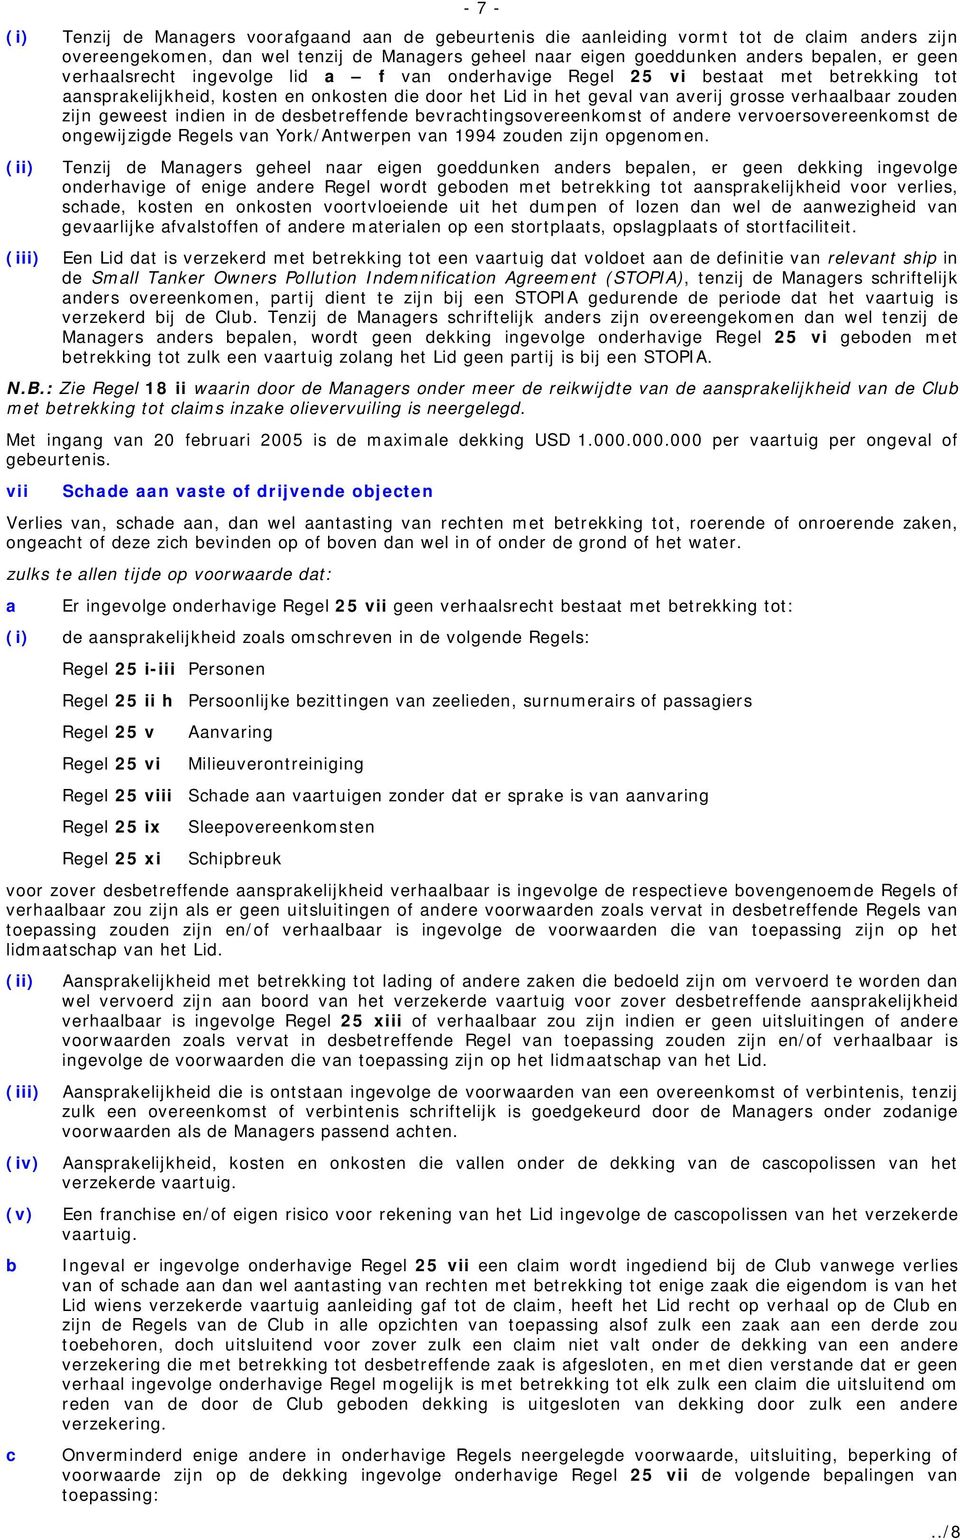 evrhtingsovereenkomst of ndere vervoersovereenkomst de ongewijzigde Regels vn York/Antwerpen vn 1994 zouden zijn opgenomen.